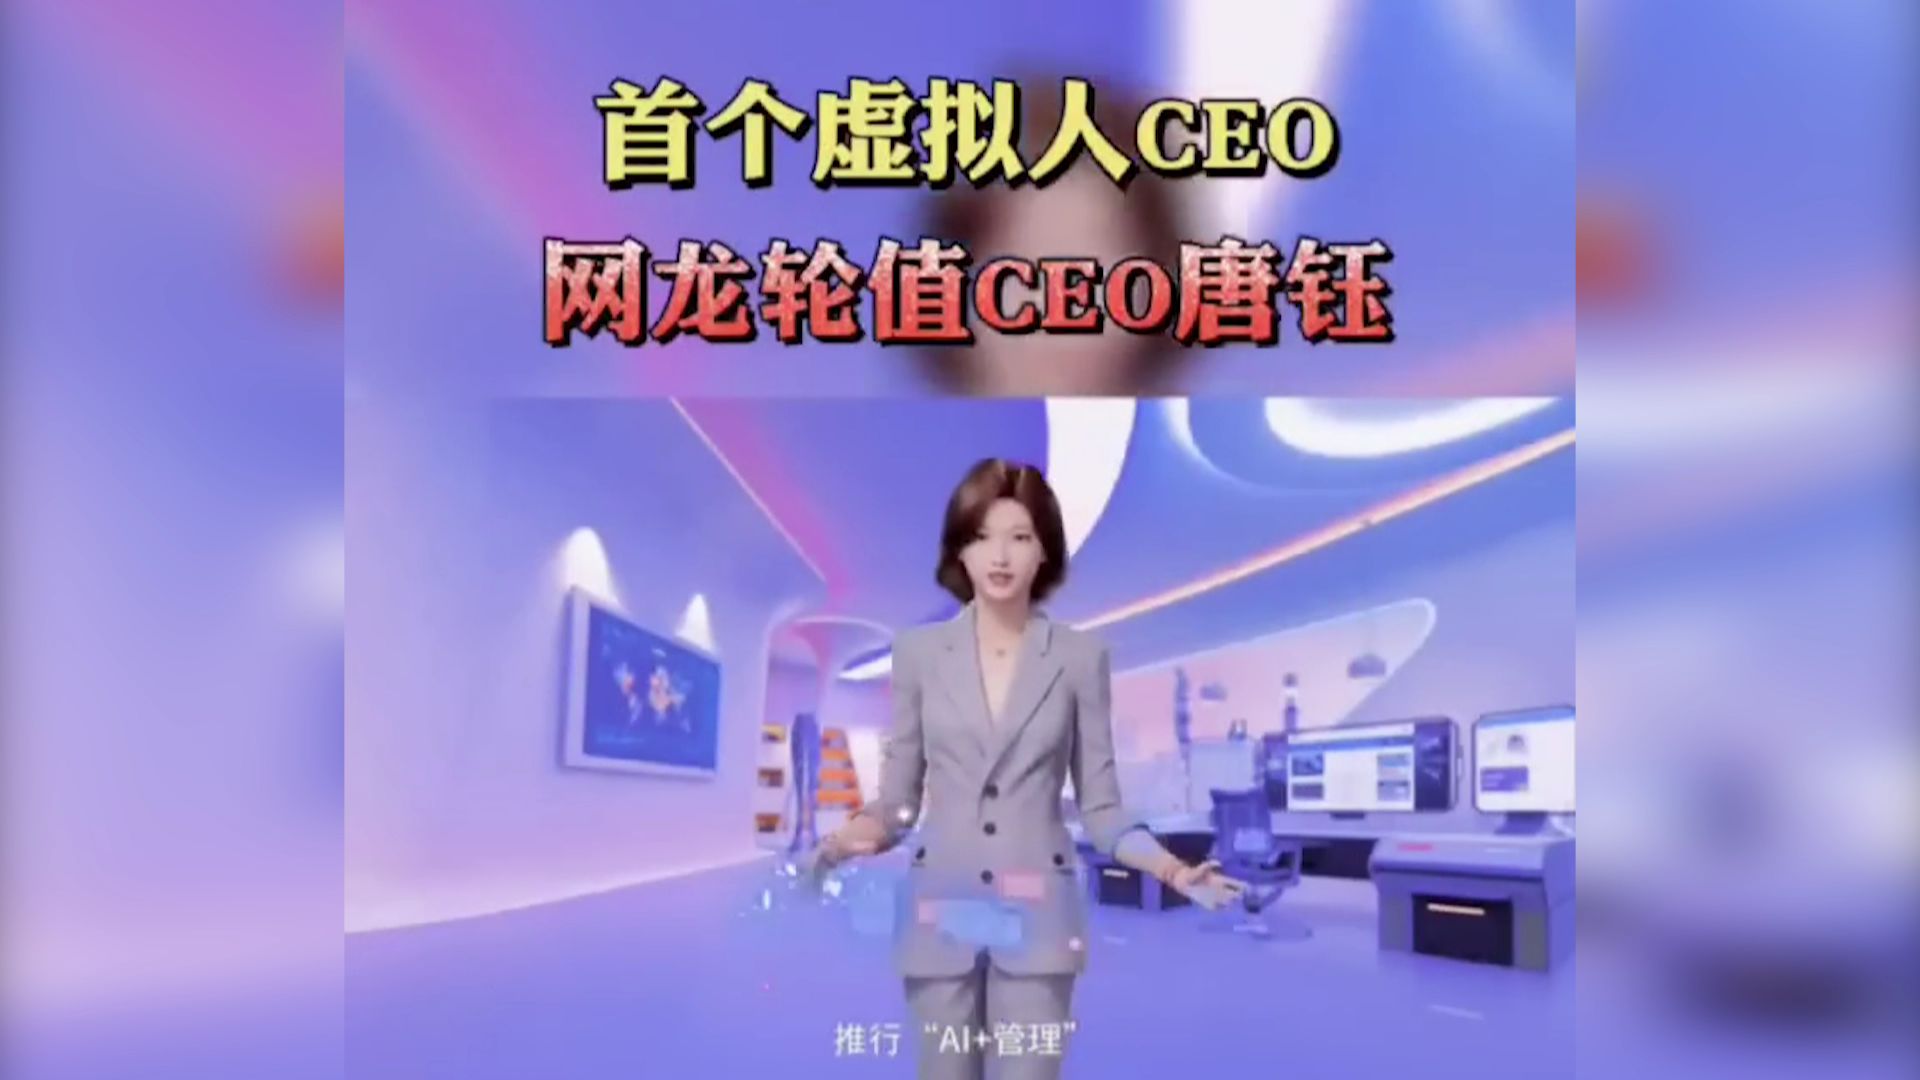 Ce gynoïde (robot qui a l’apparence d’une femme) est la directrice d’une entreprise de jeux vidéo en Chine.